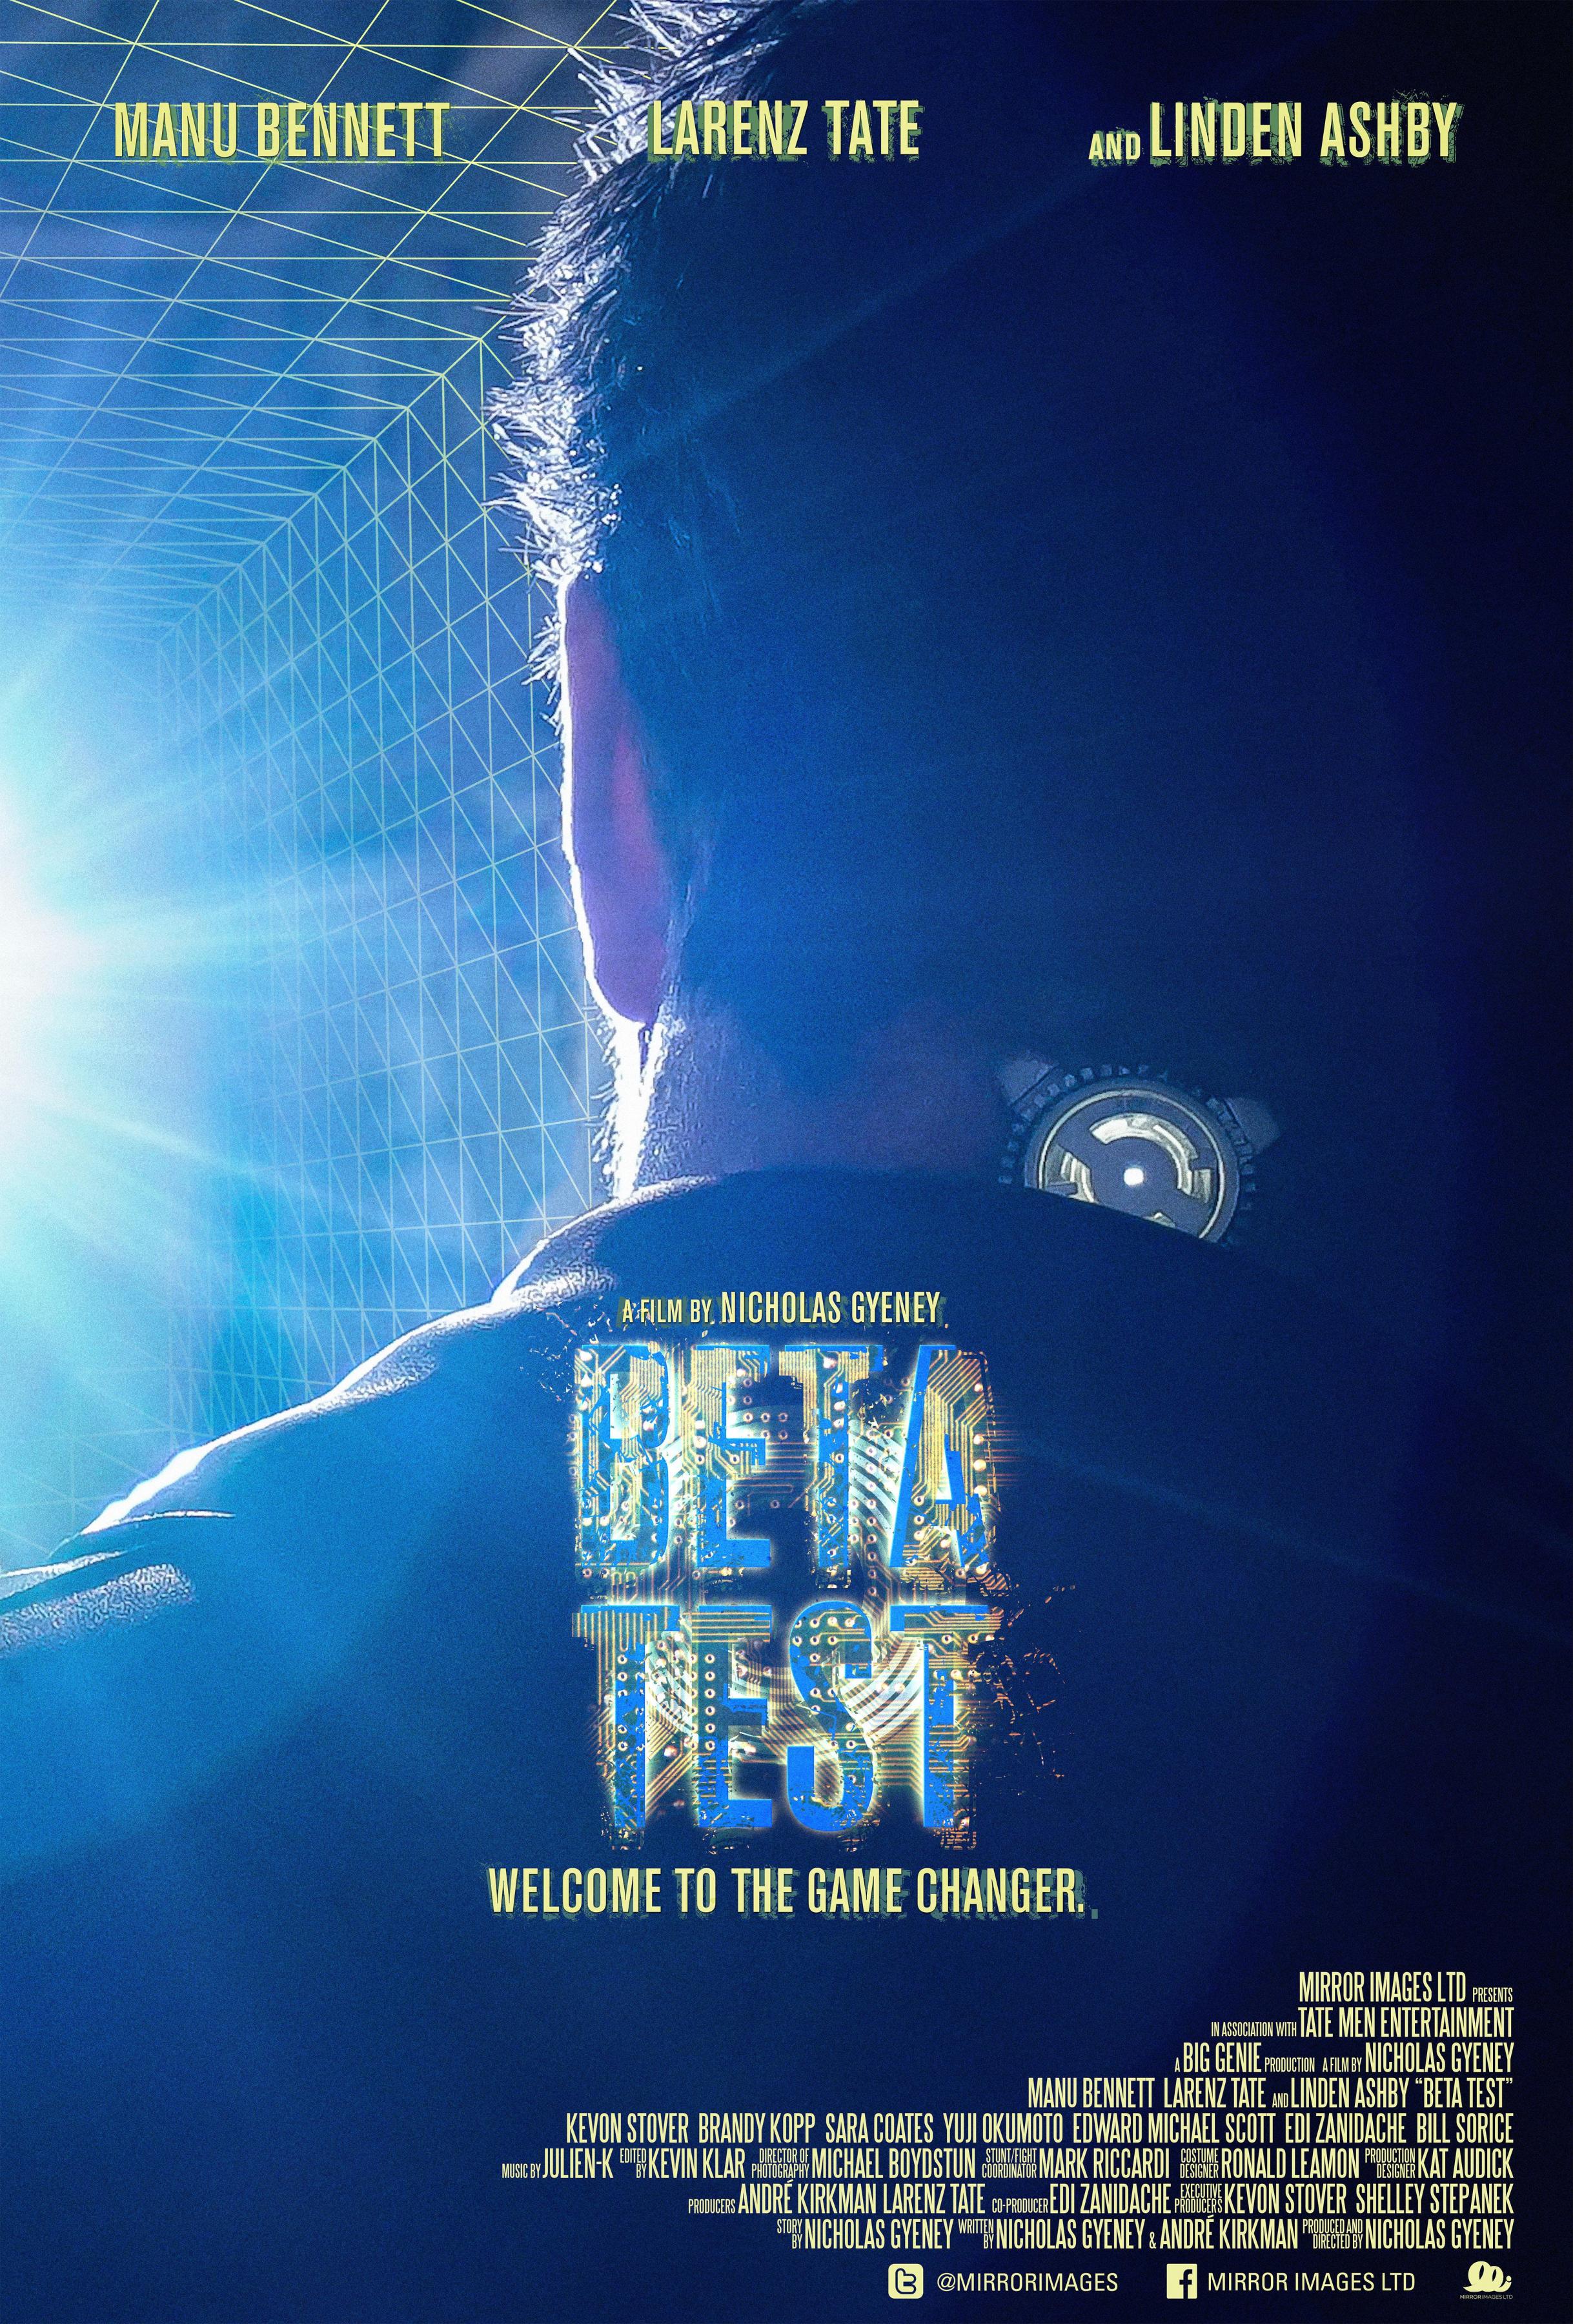 Постер фильма Бета-тест | Beta Test